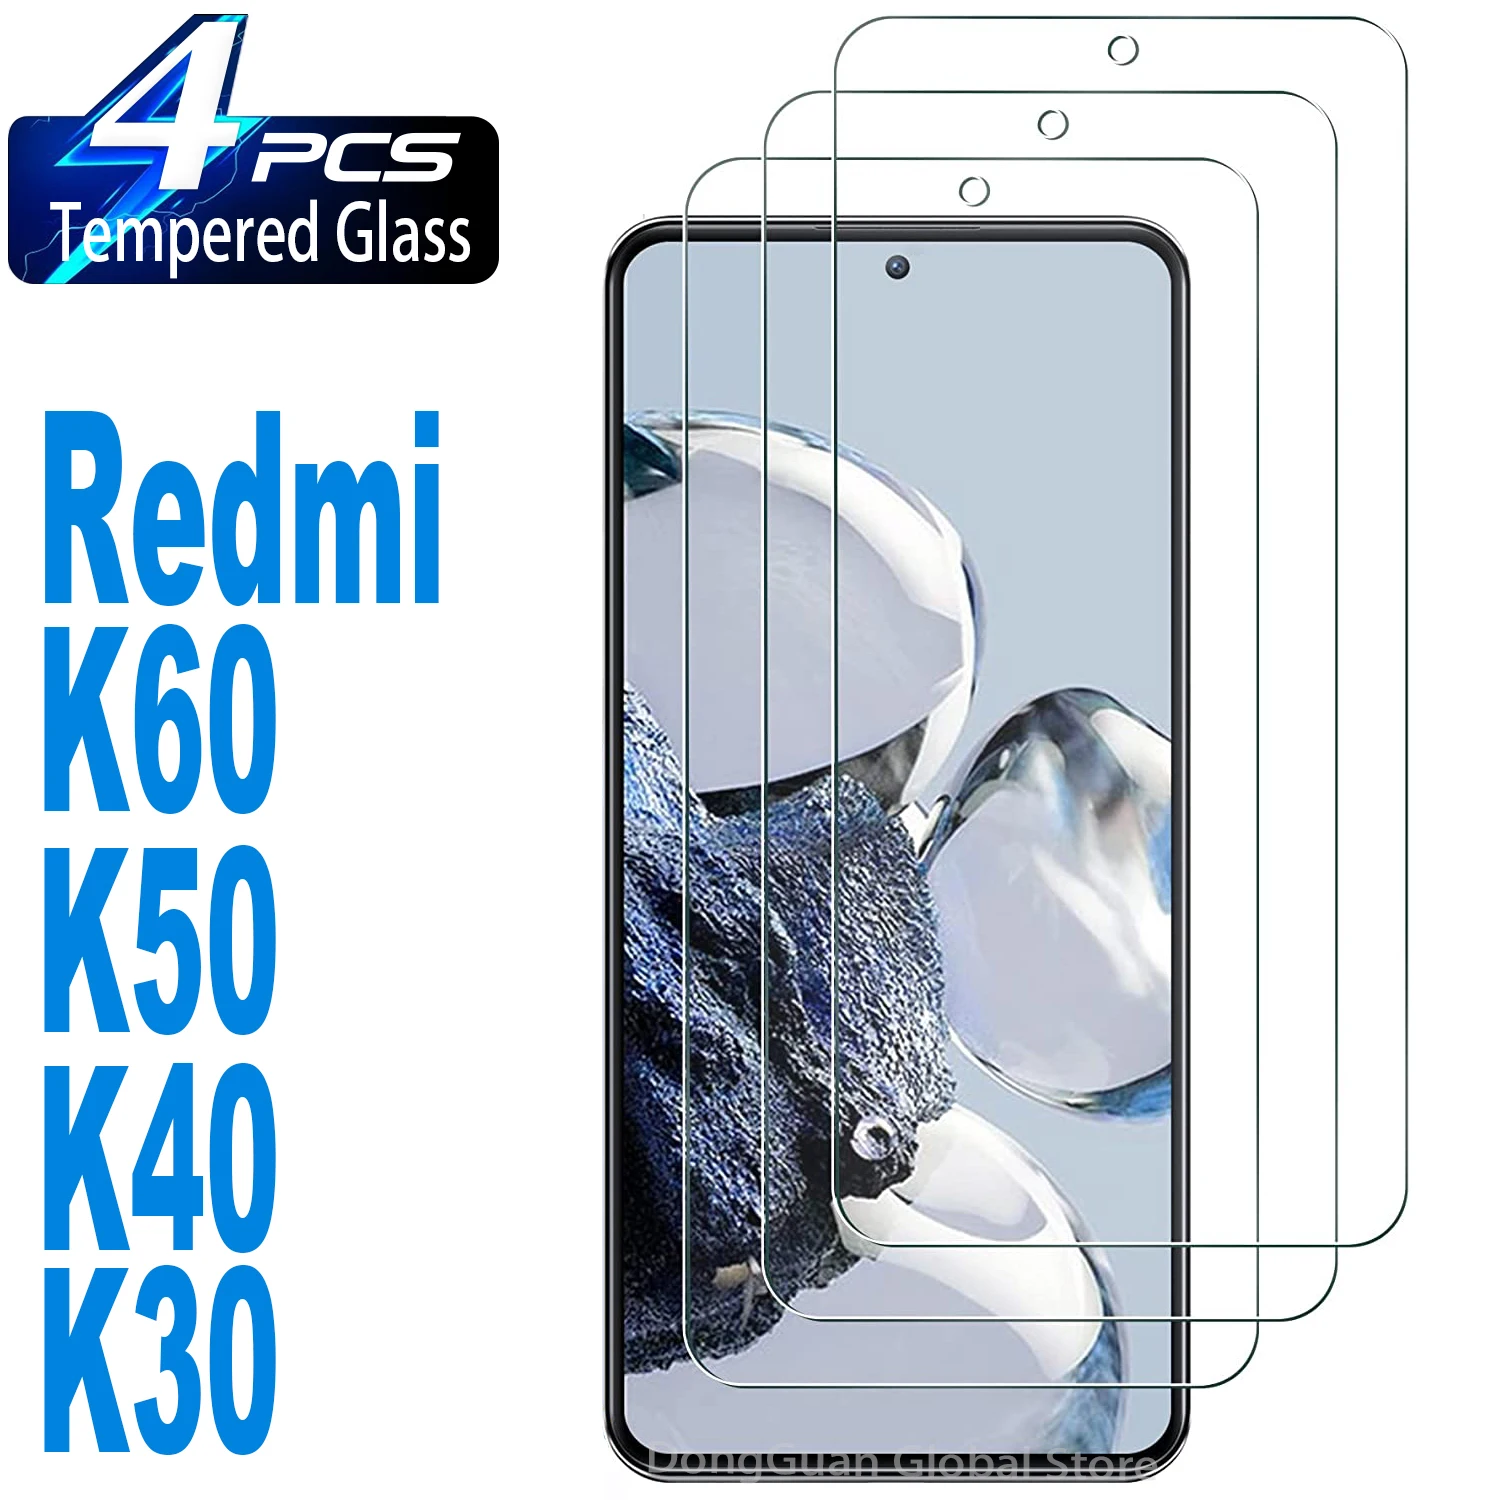 2/4Pcs Tempered Glass For Xiaomi Redmi K60 Pro E K50 K40 K30 Screen Protector Glass Film for xiaomi poco f2 pro tempered glass nillkin h pro anti explosion screen protector glass for redmi k30 pro k30 ultra k30 5g